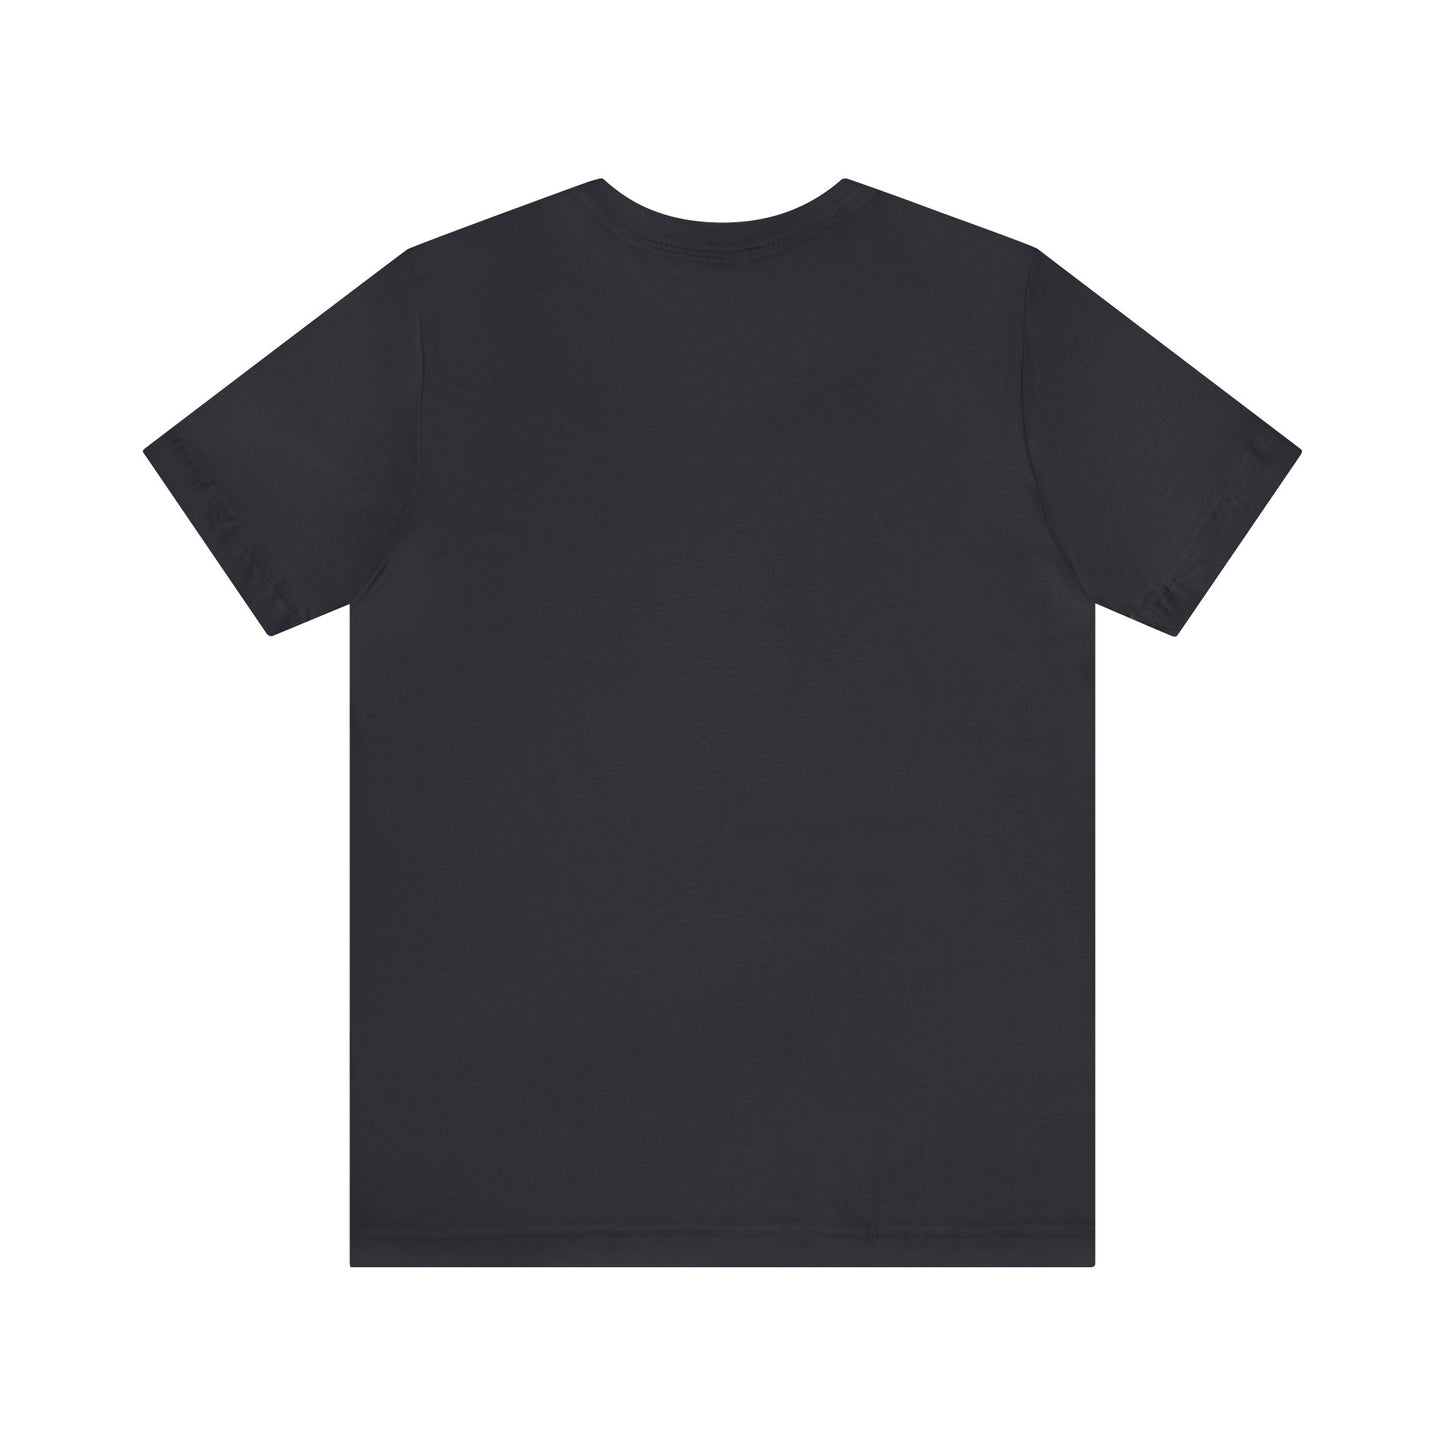 Scalisour ASD T-Shirt